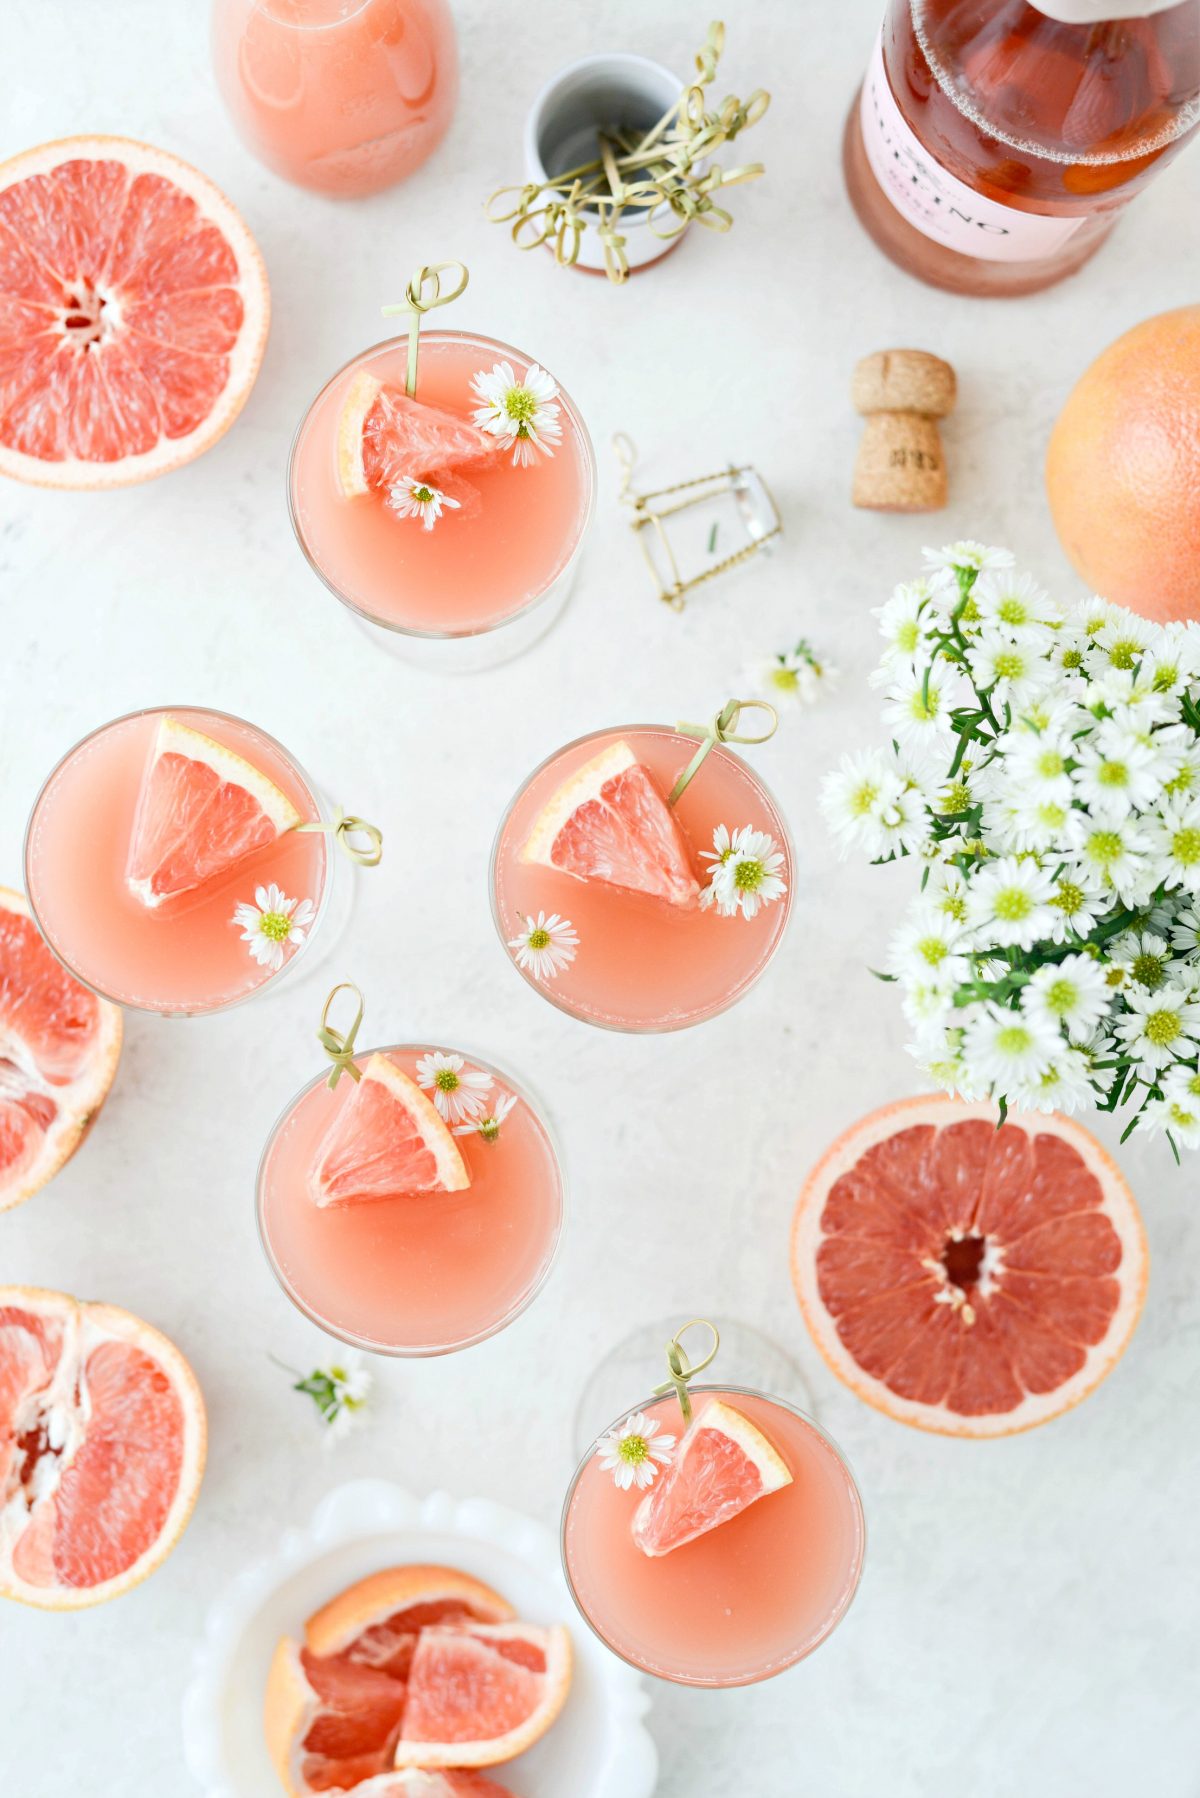 grepfrut Rosa inox l SimplyScratch.com # adult # băutură # grapefruit # trandafir # mimosa # Paște # brunch # Ziua Mamei